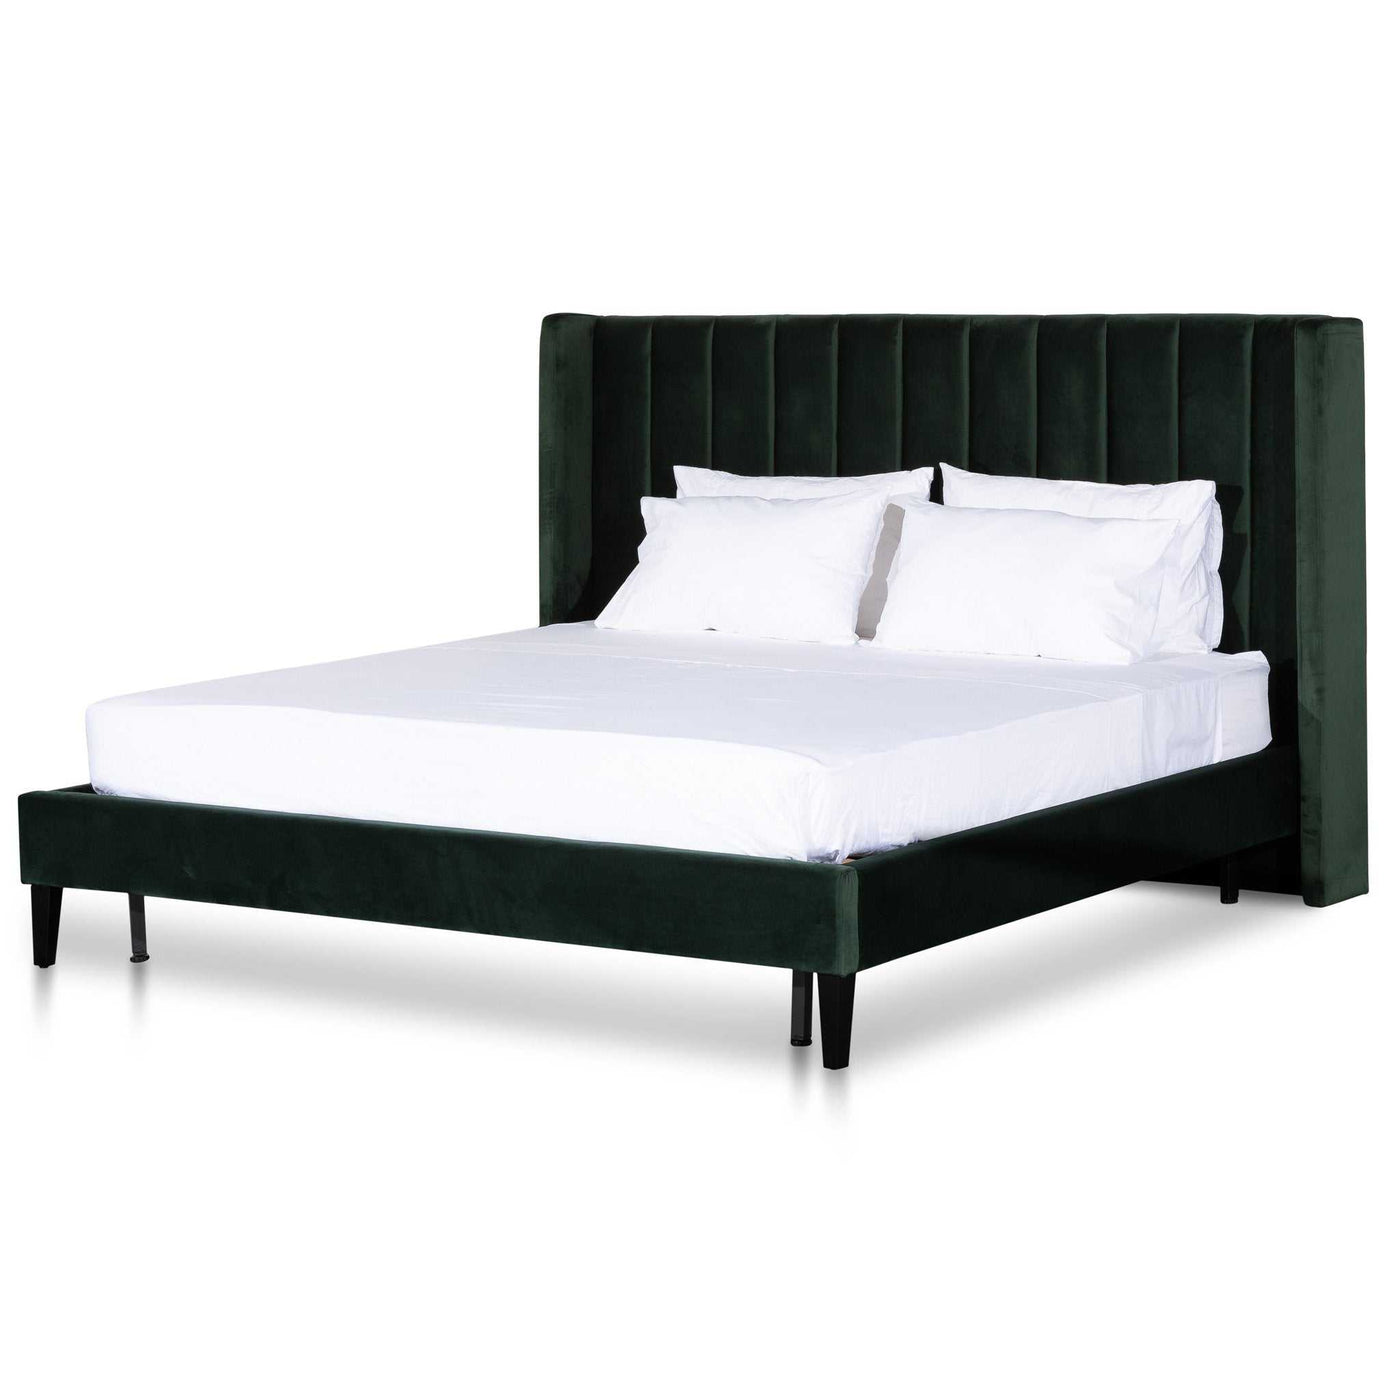 King Bed Frame - Forest Green Velvet